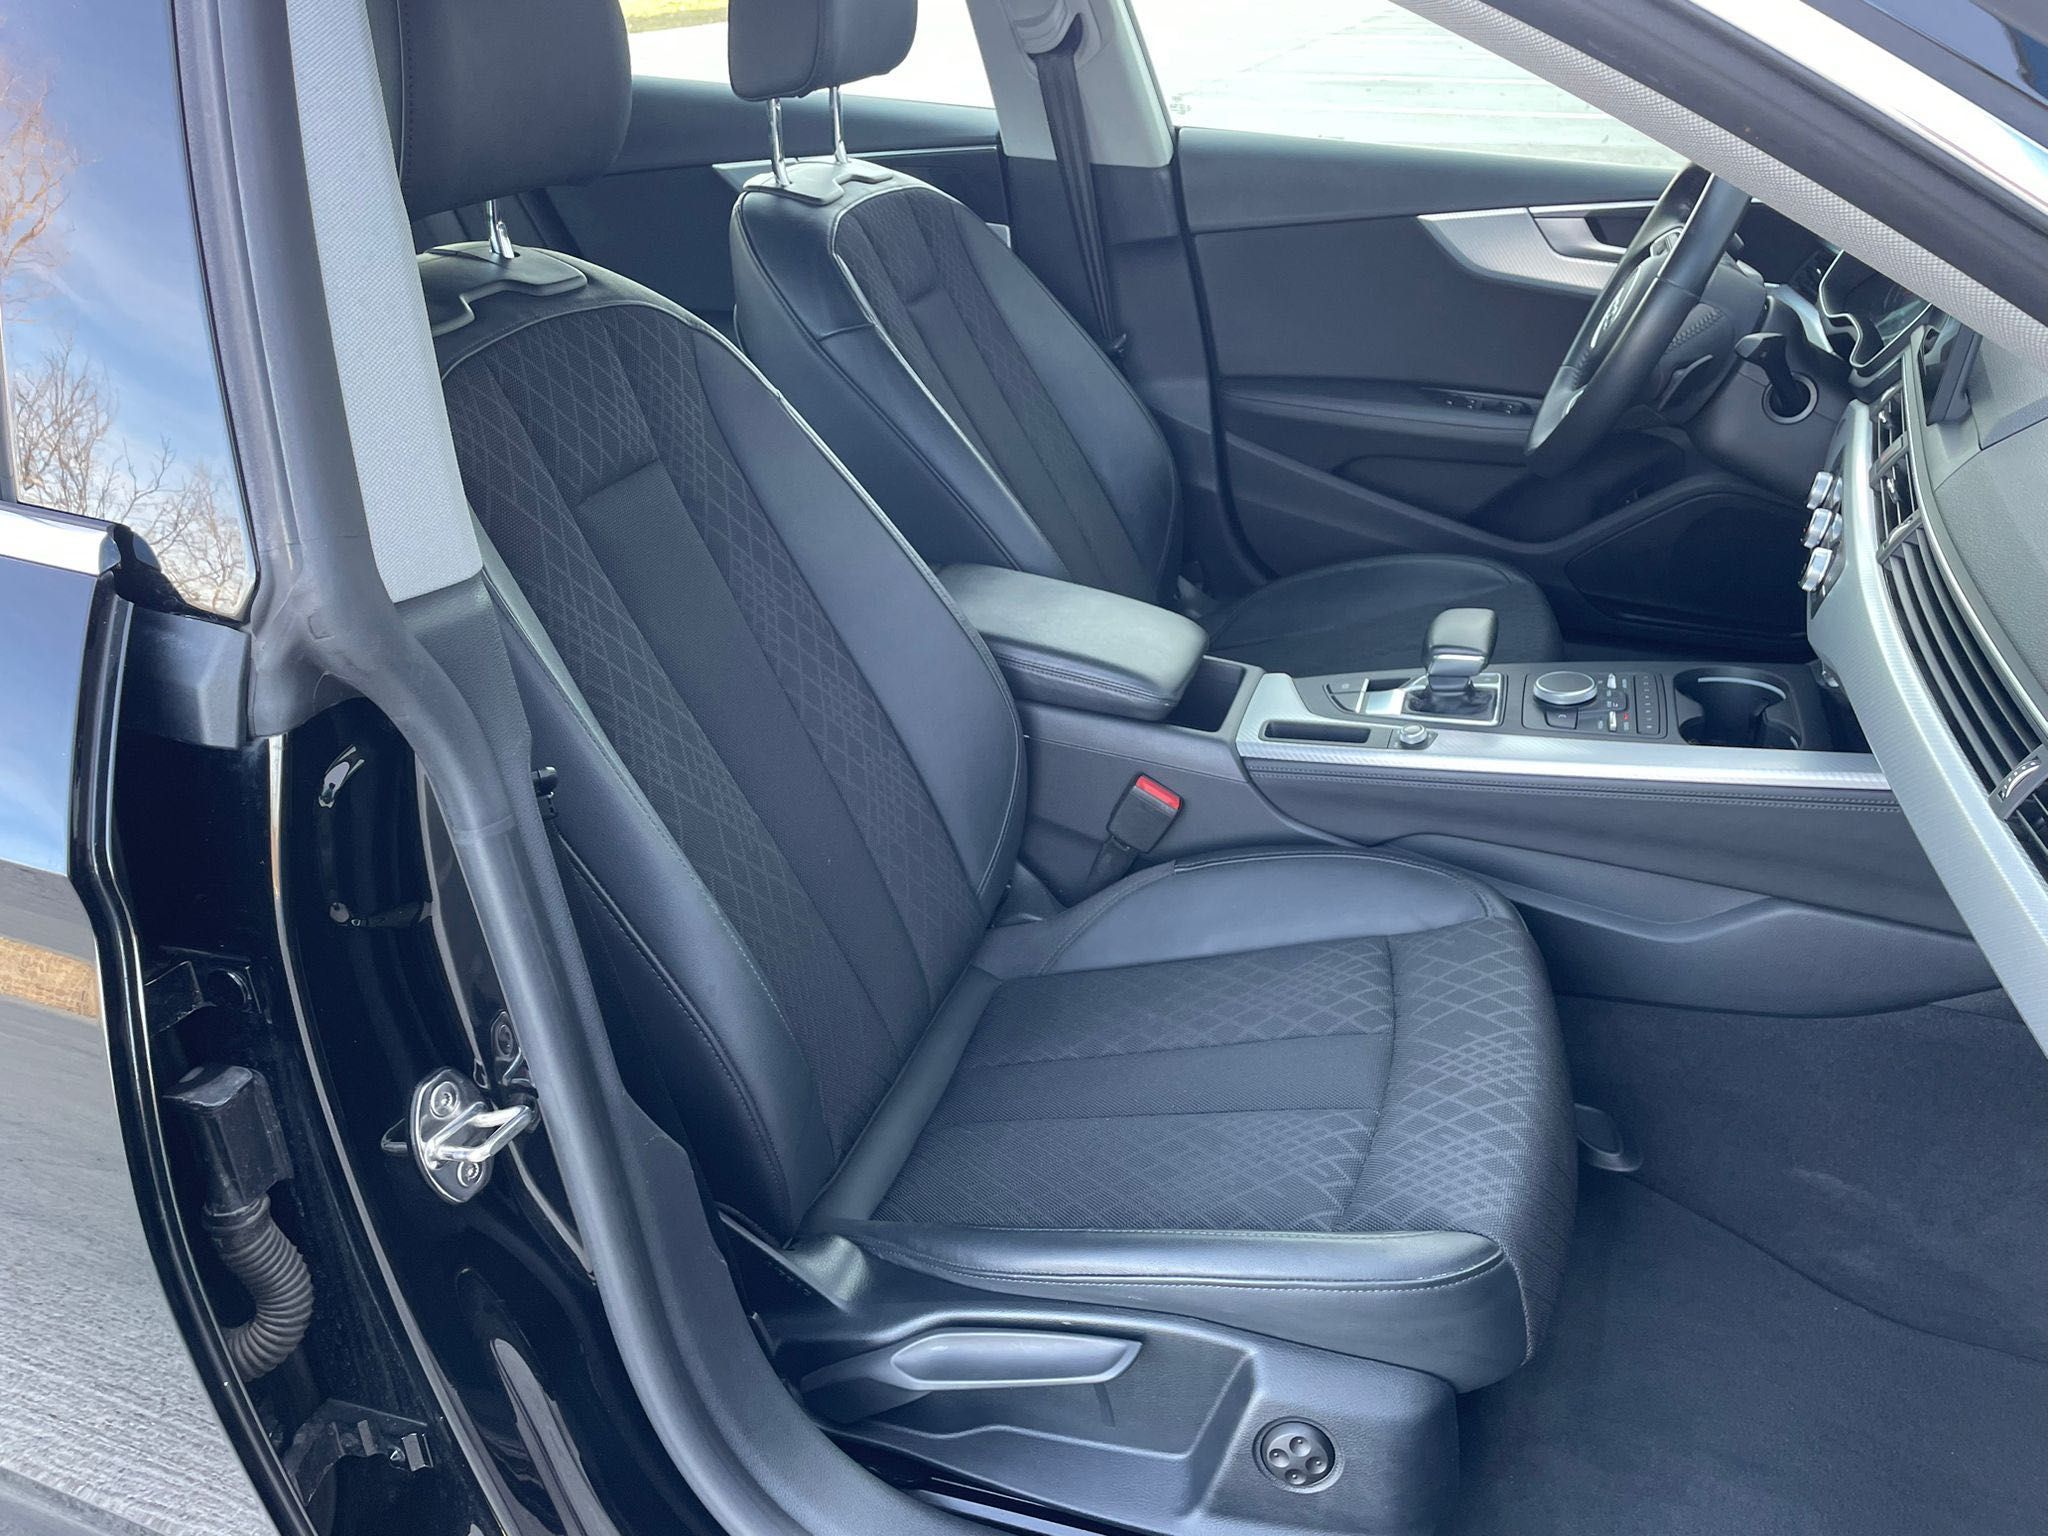 Audi A5 Sline 2019